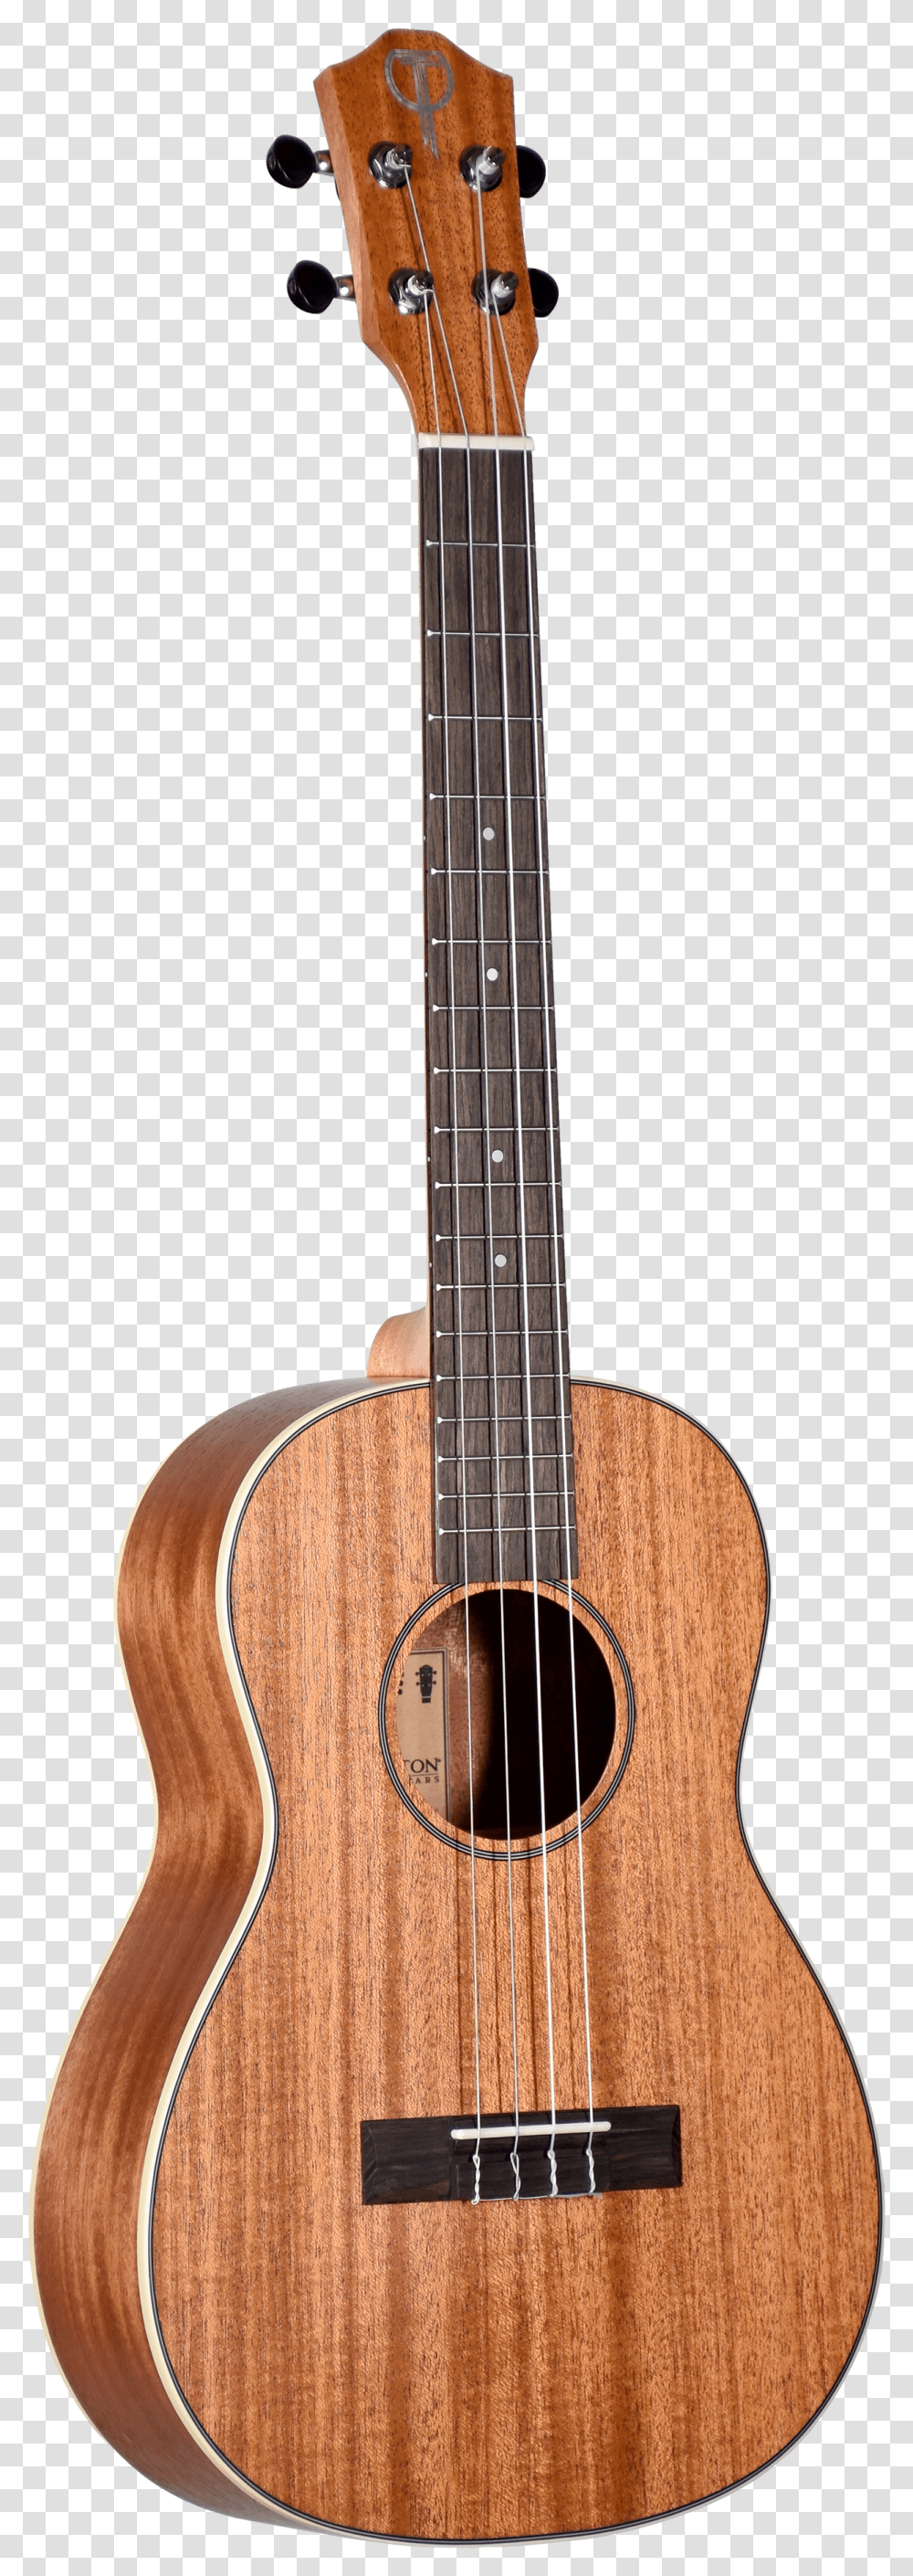 Yamaha Classical Guitar Cutaway Transparent Png